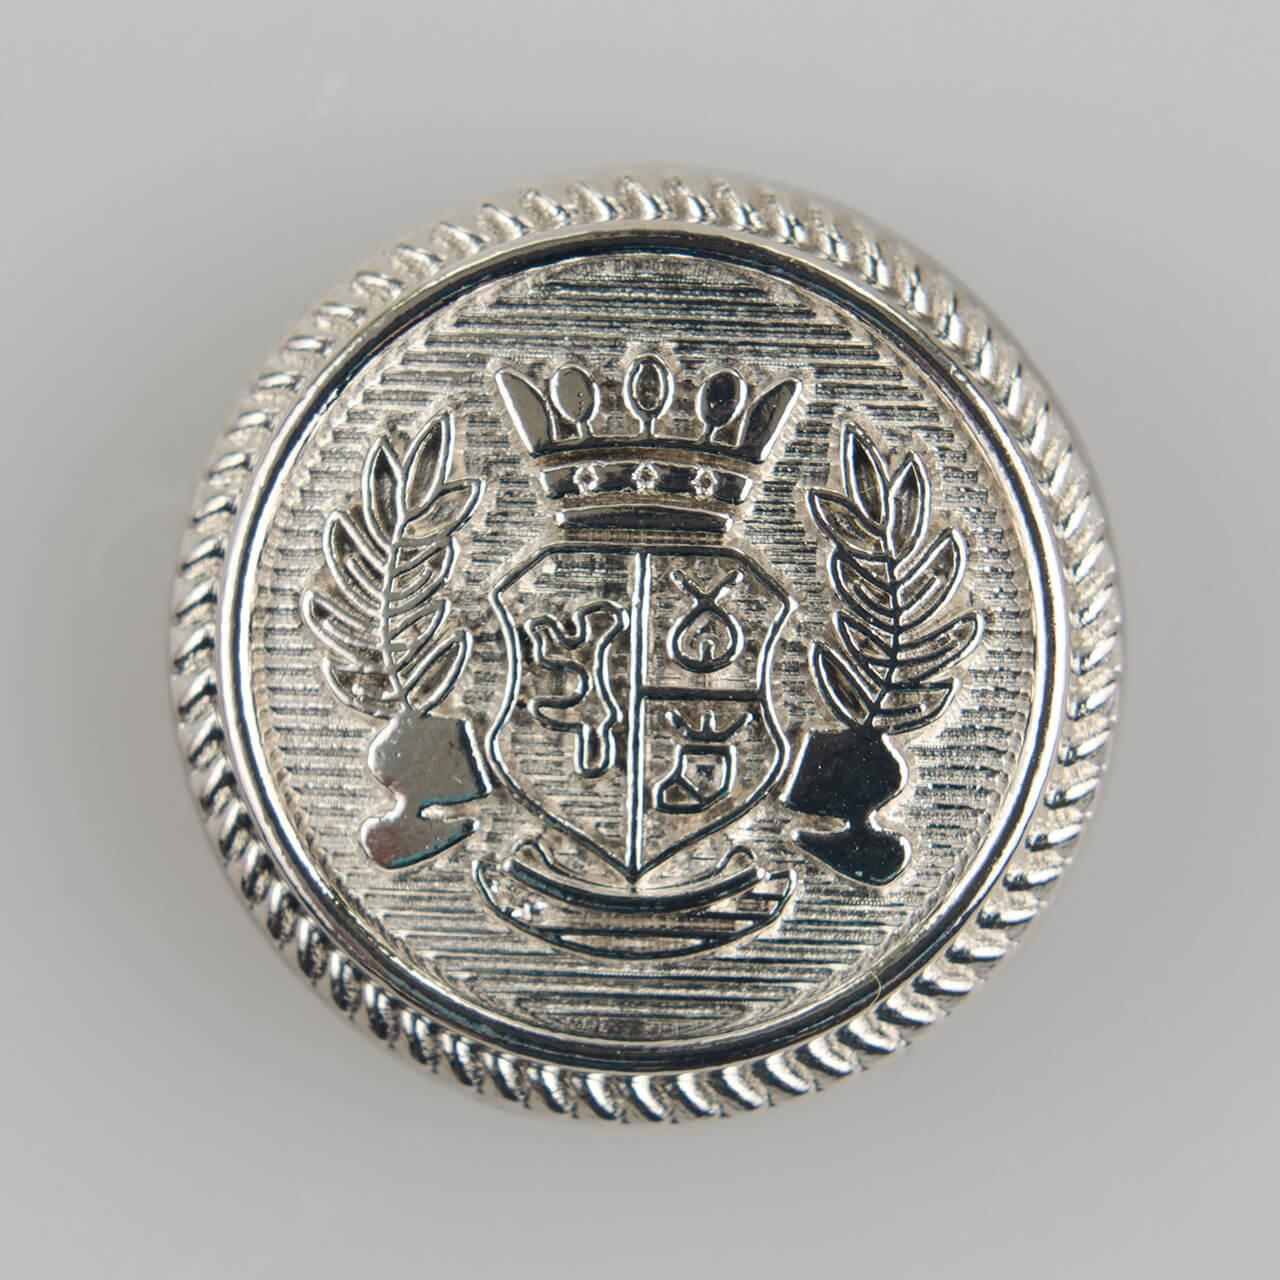 Guzik ozdobny z herbem ogólnego zastosowania o średnicy 25 mm, kolor srebrny.